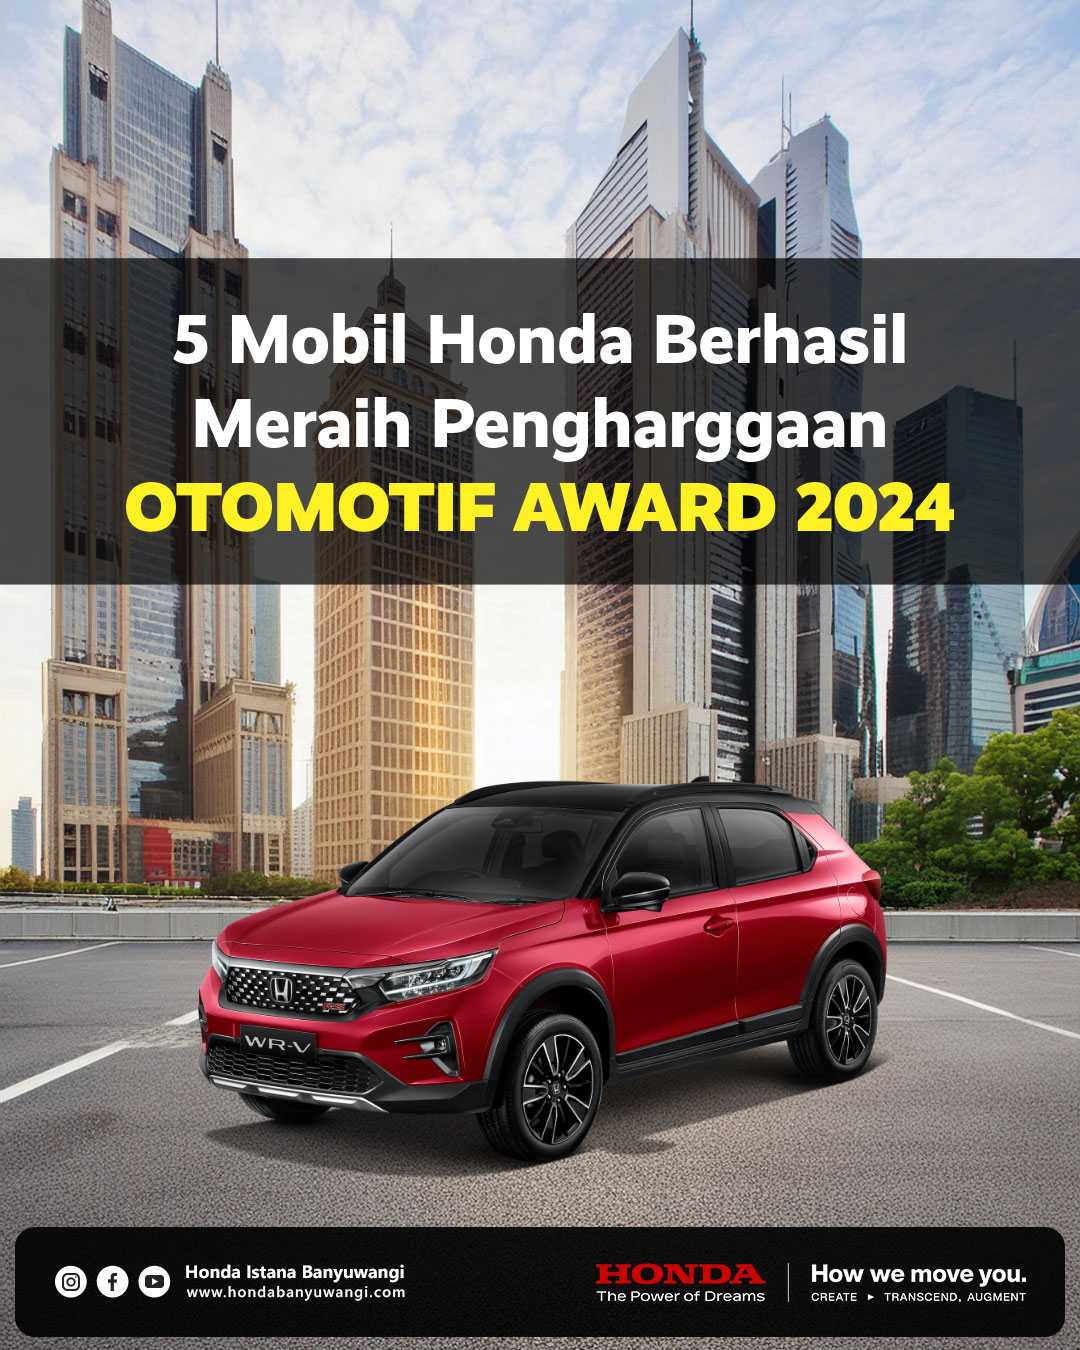 Honda Otomotif Award 2024